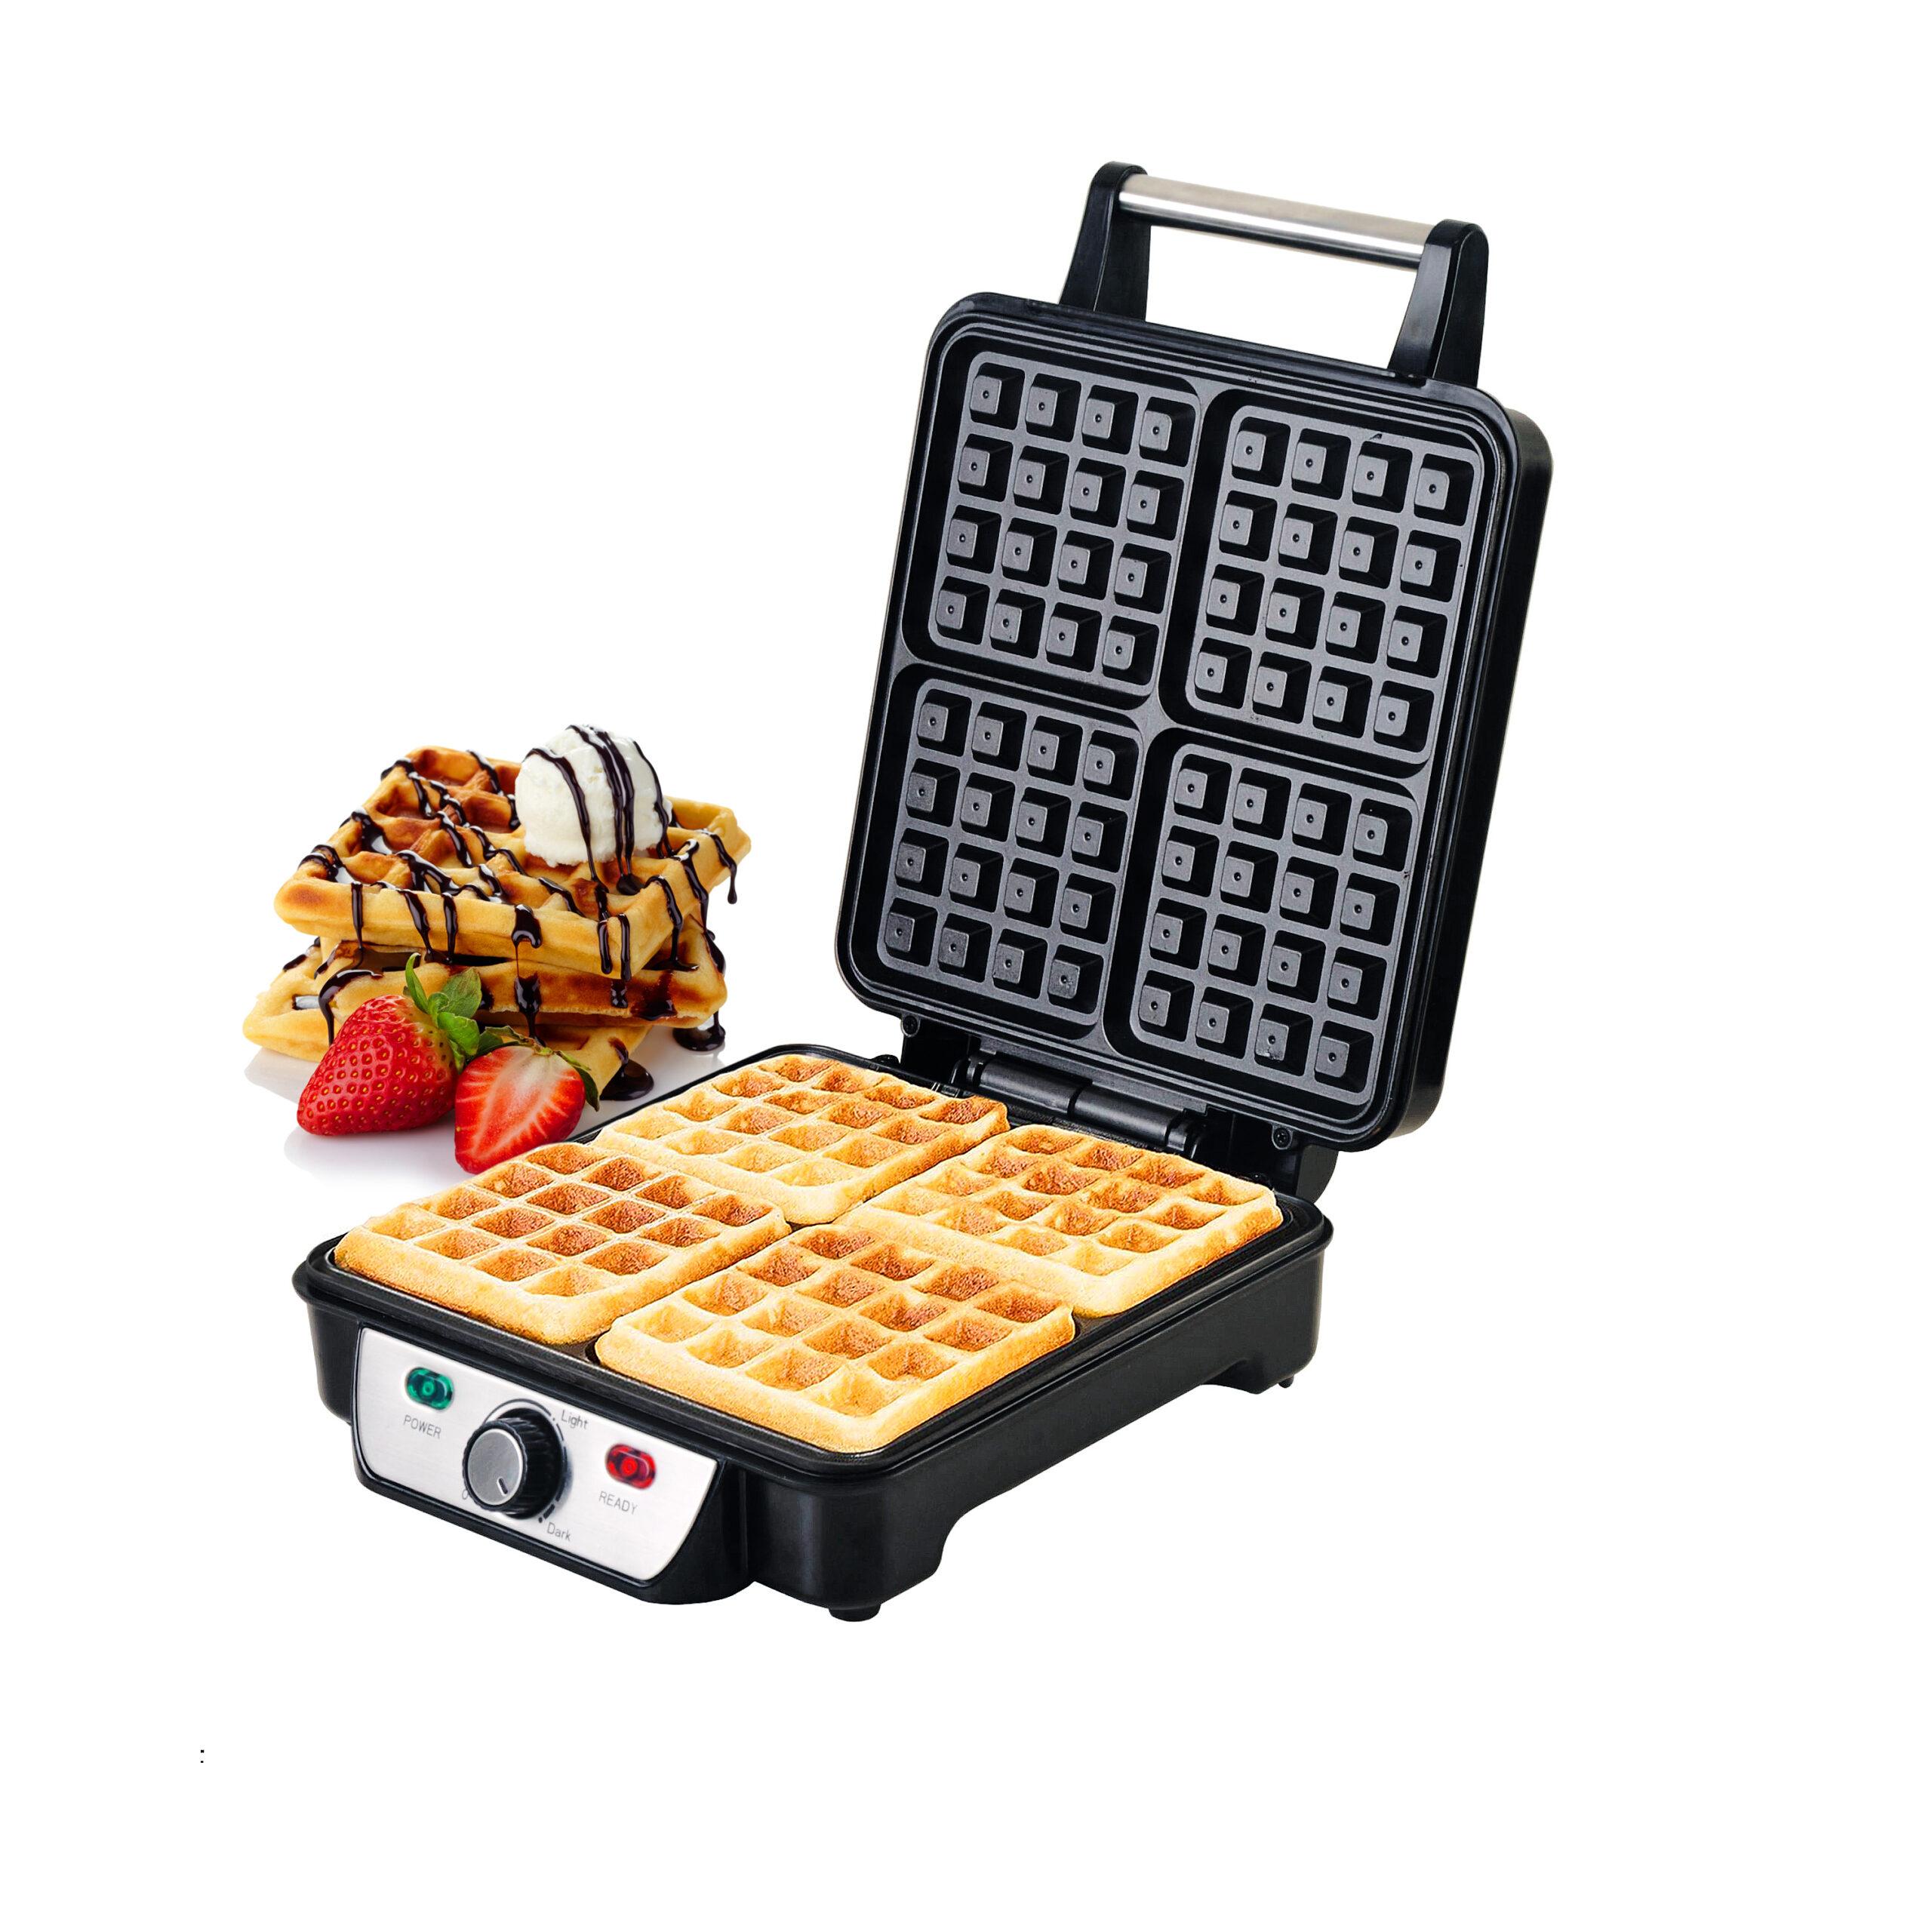 جهاز وافل بقوة 1100 واط  Waffle Maker - Geepas